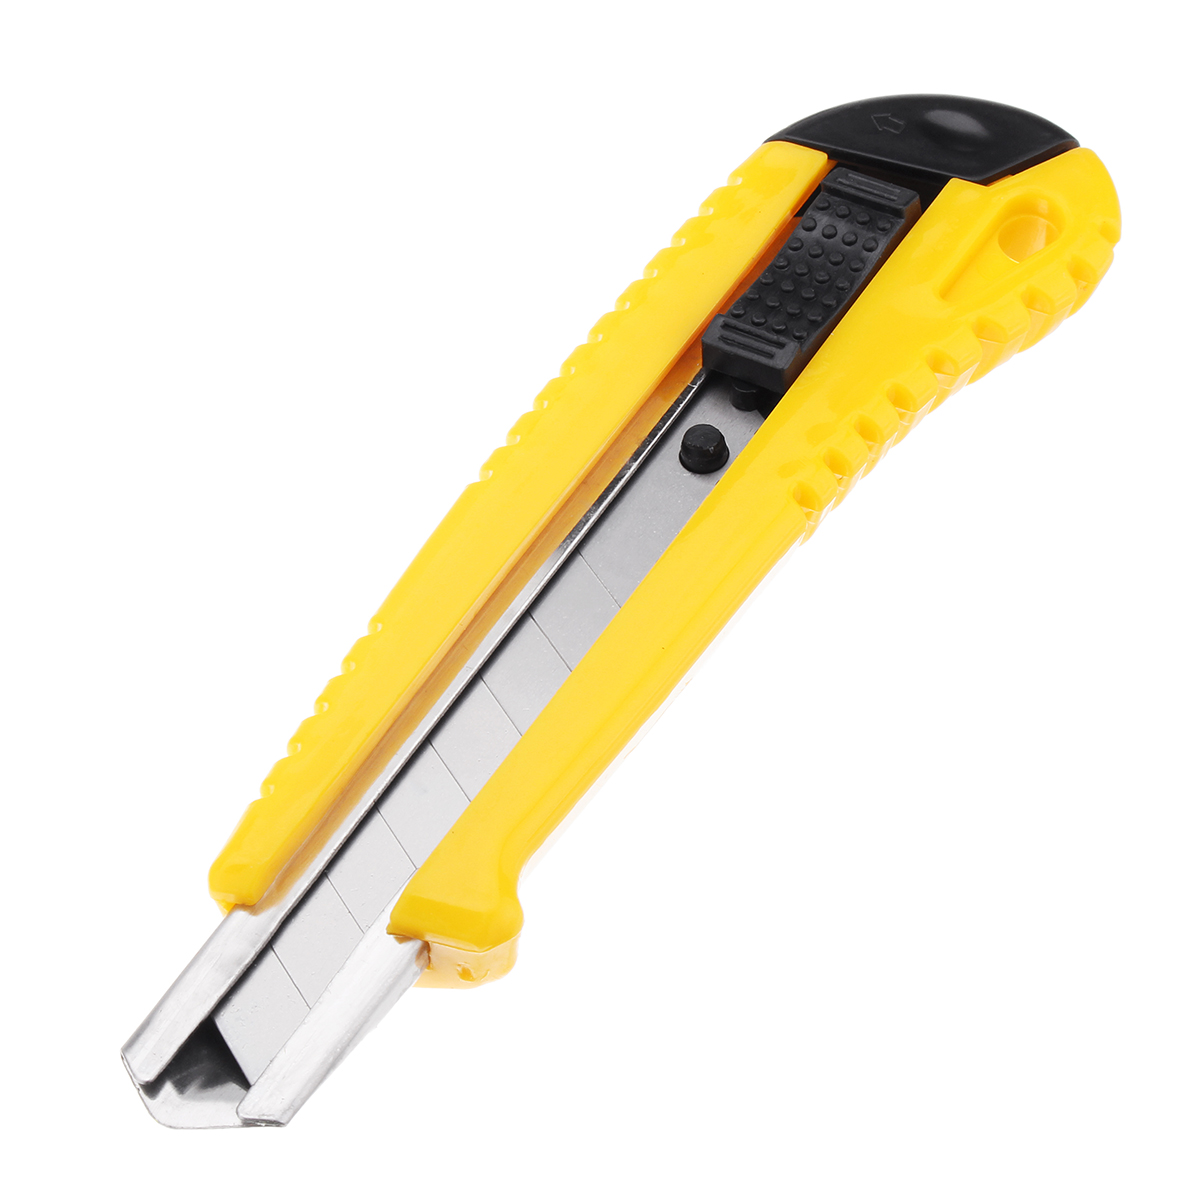 13Pcs-DIY-Household-Hand-Tool-Kit-Maintenance-Repair-Kits-Tape-Measure-Screwdriver-Cutter-Tool-1272087-5